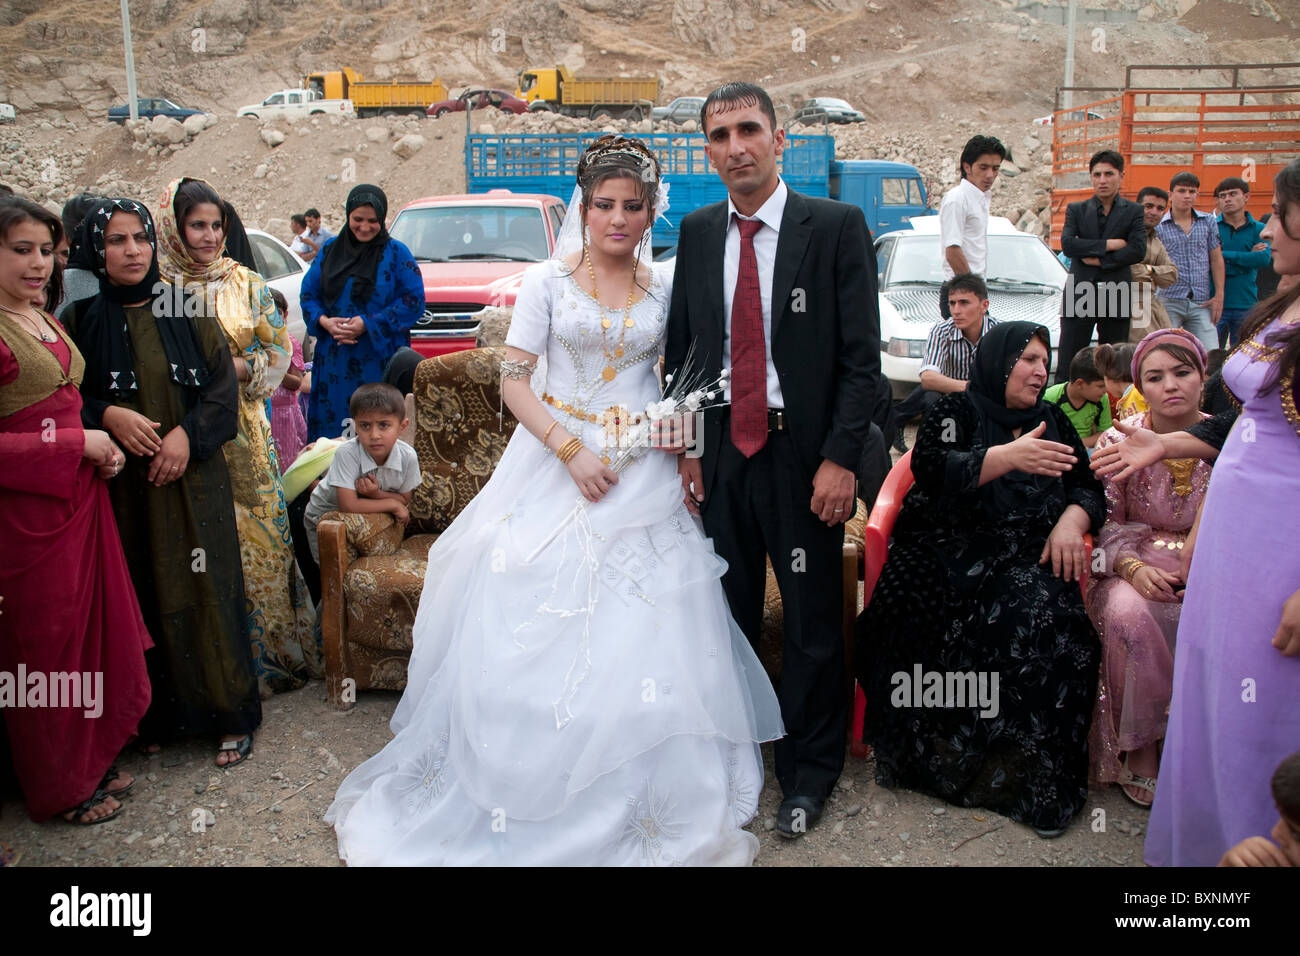 Une femme et un homme poser avec des invités à un mariage kurde en plein air dans les montagnes du nord de l'Irak, près de la ville de Rowanduz et la frontière iranienne. Banque D'Images